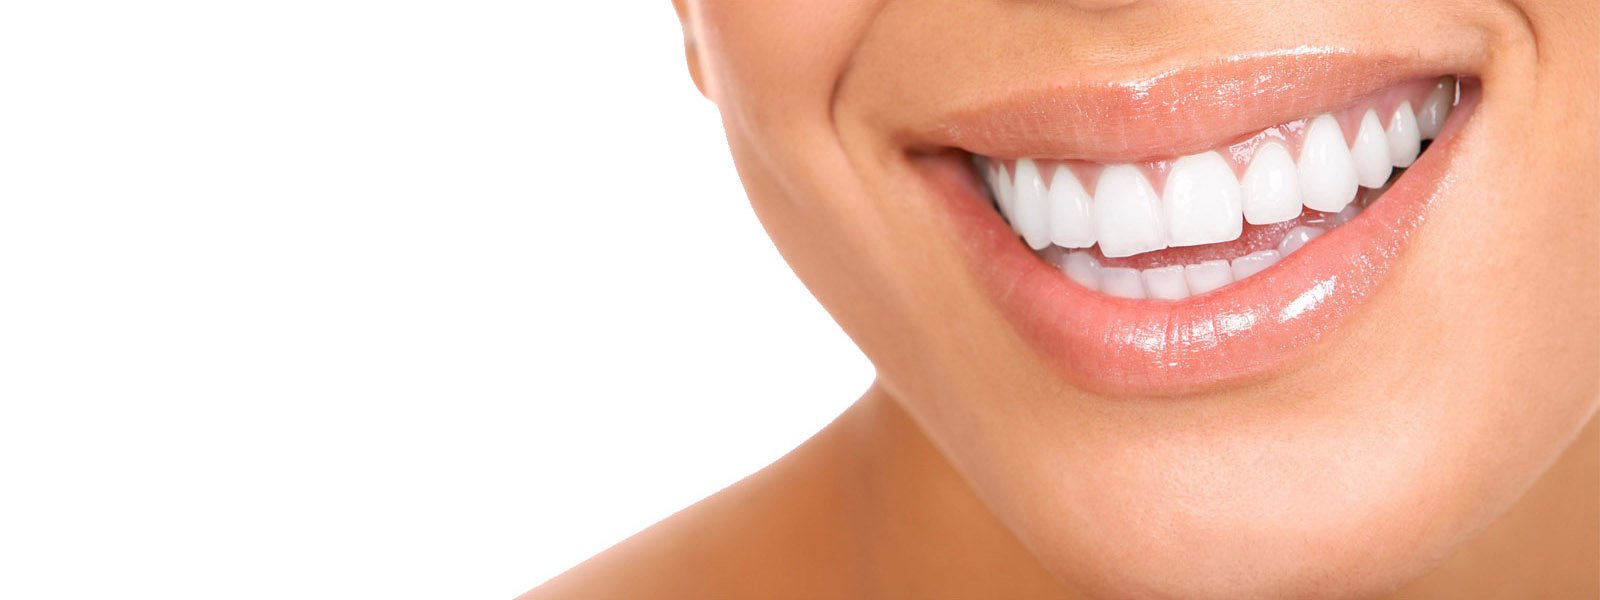 Overland Park Dentistry's Big Smile